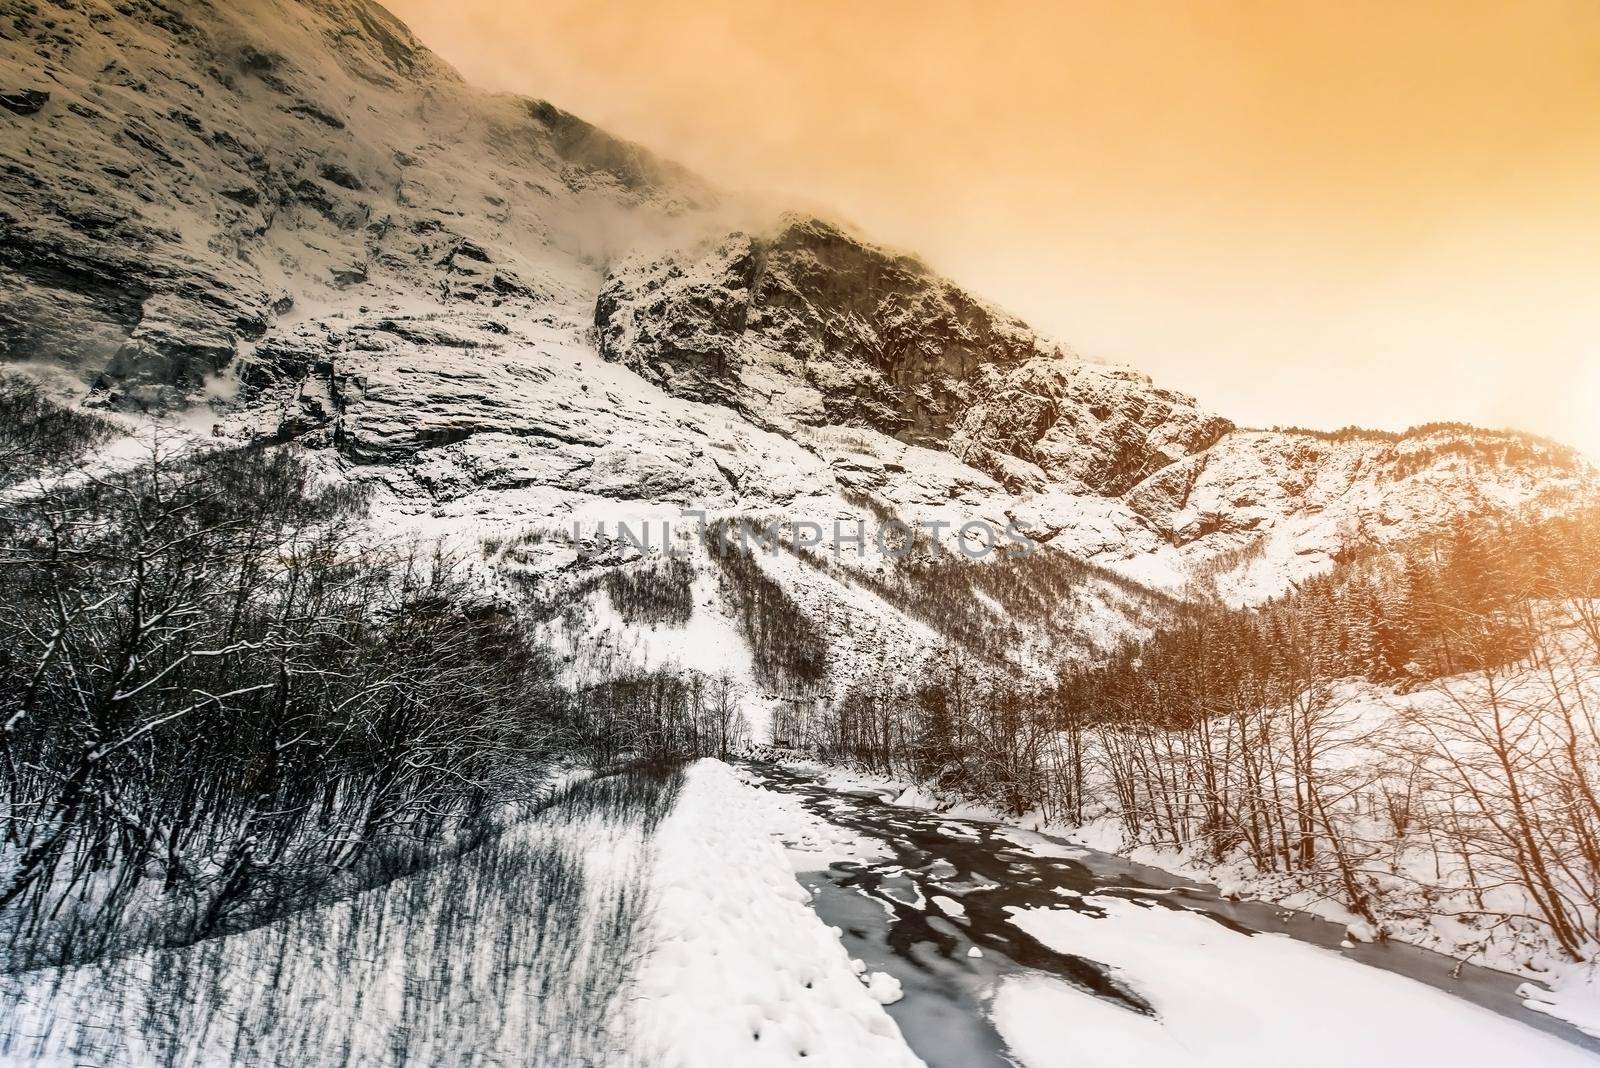 Winter landscape by GekaSkr